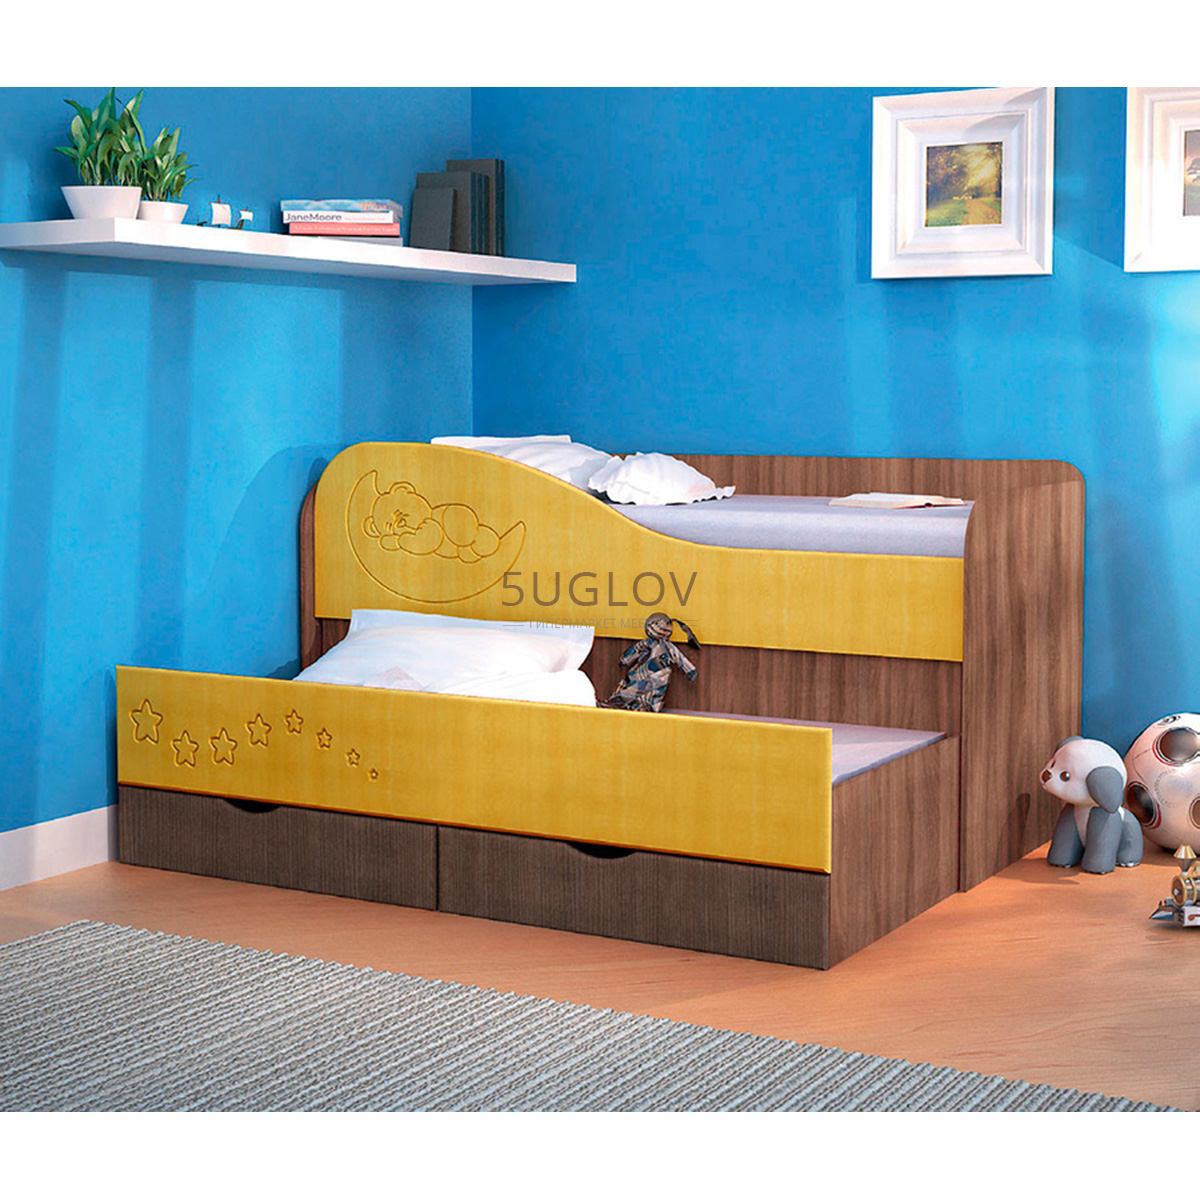 Кровать двойная выдвижная. Кровать двухъярусная выкатная 80×190. 2 Х ярусная кровать для детей 190*80.